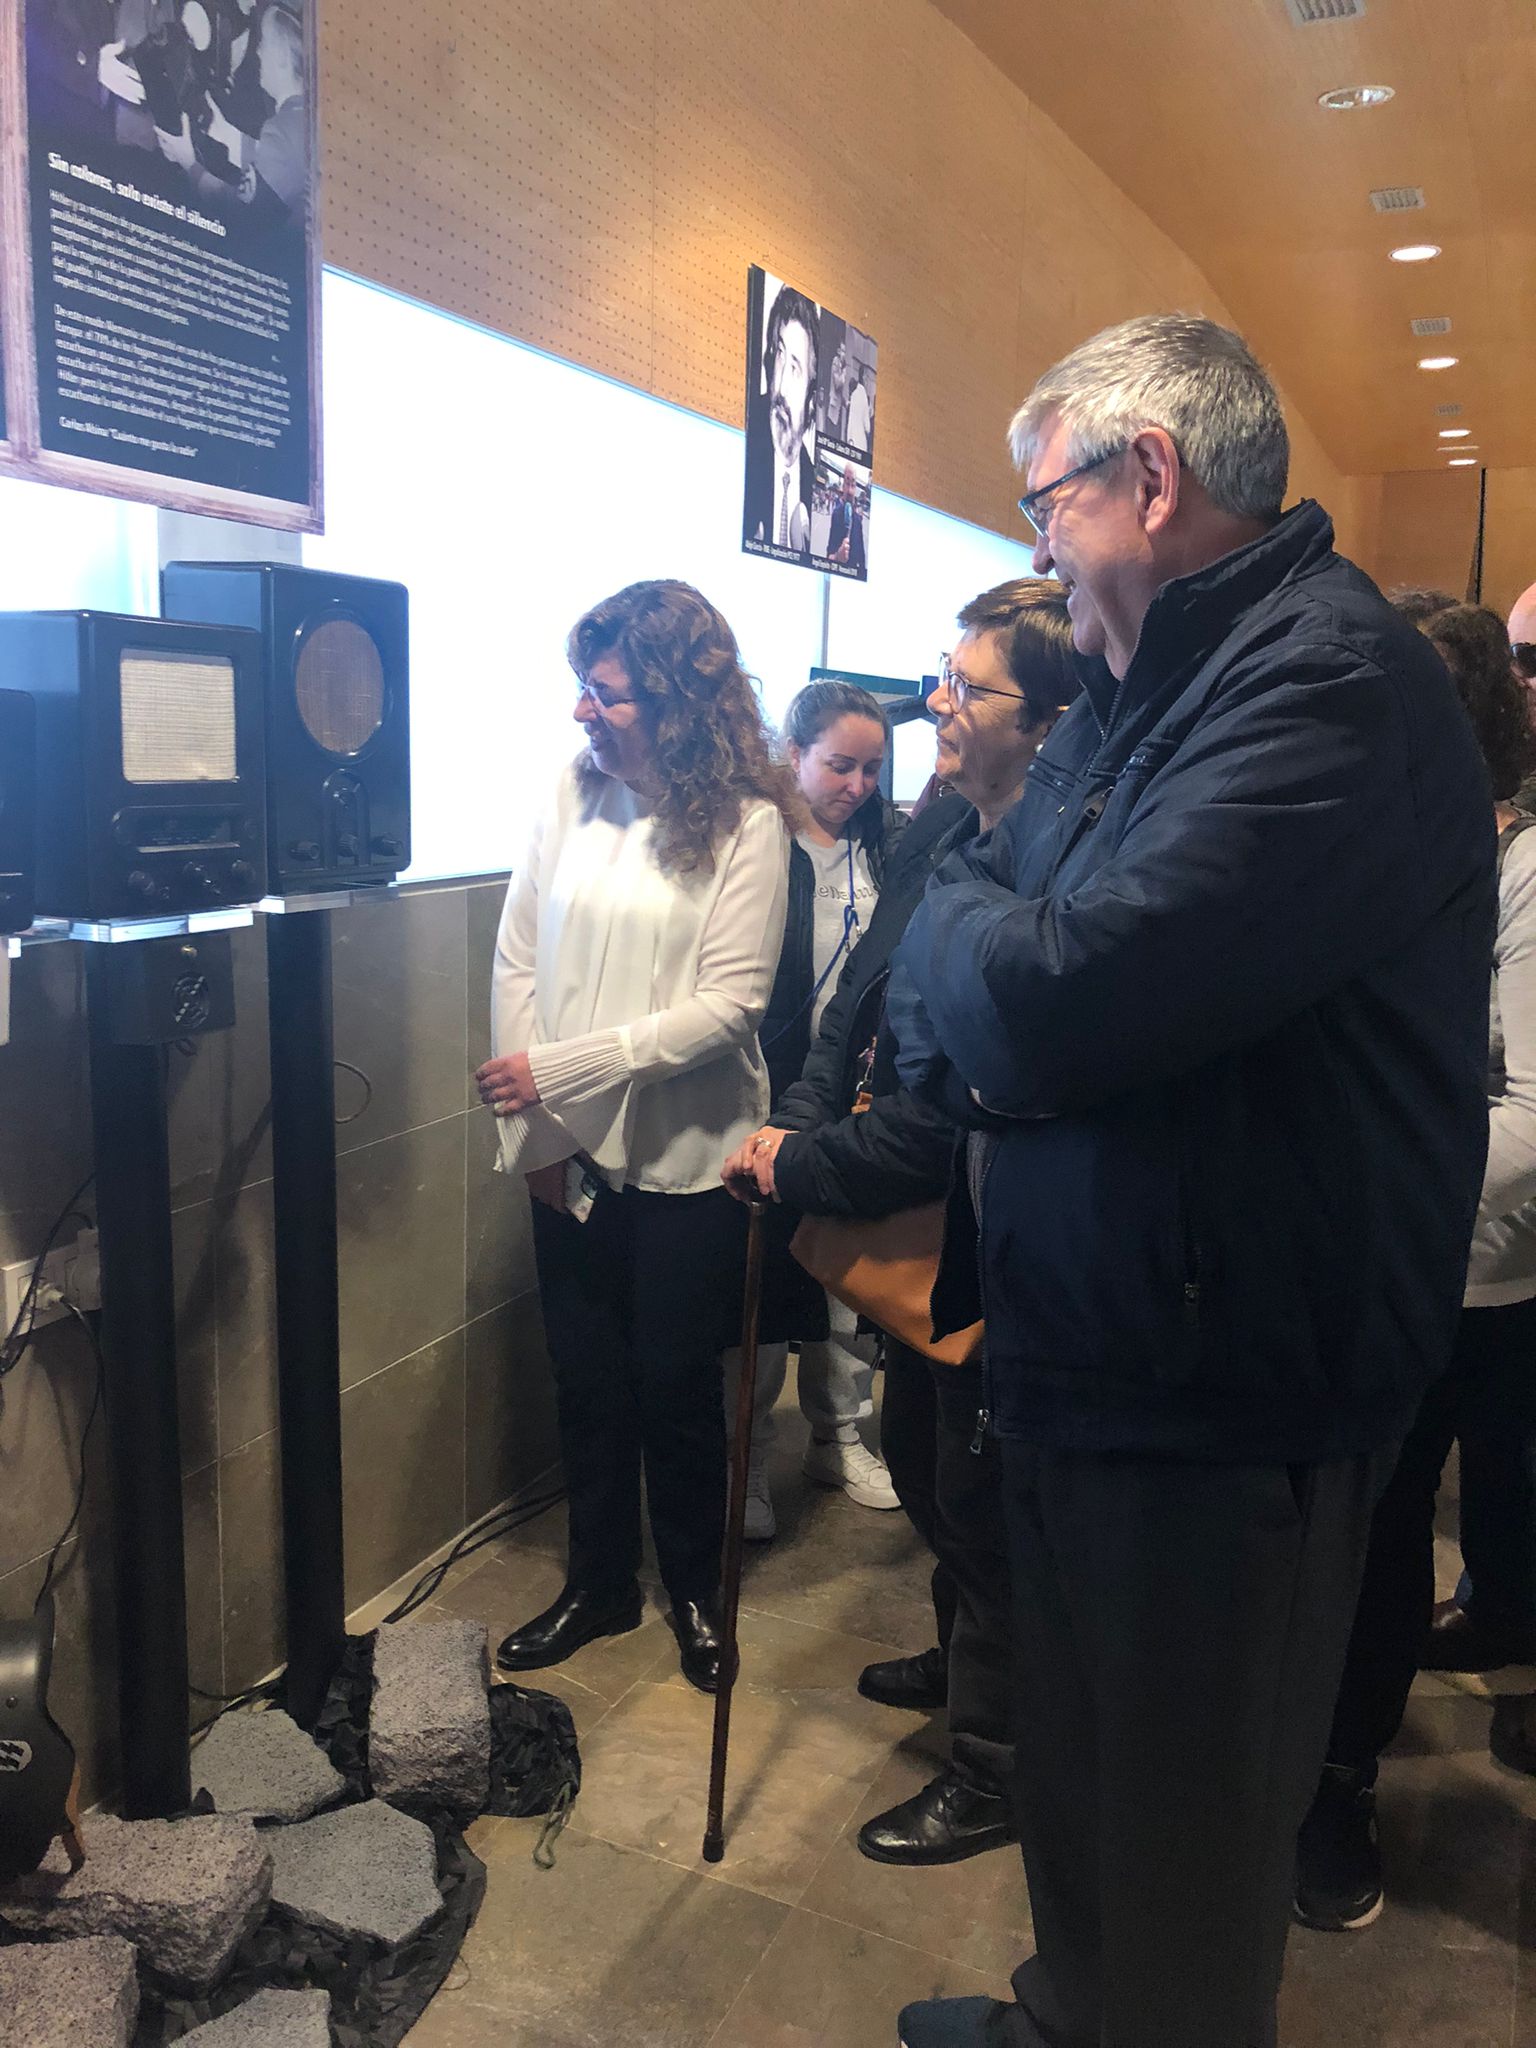 Visitantes de la exposición viendo una de las radios de la colección, entre ellos, se encuentra Cristina Abarca, vicepresidenta del Consejo Territorial de la ONCE en Castilla-La Mancha